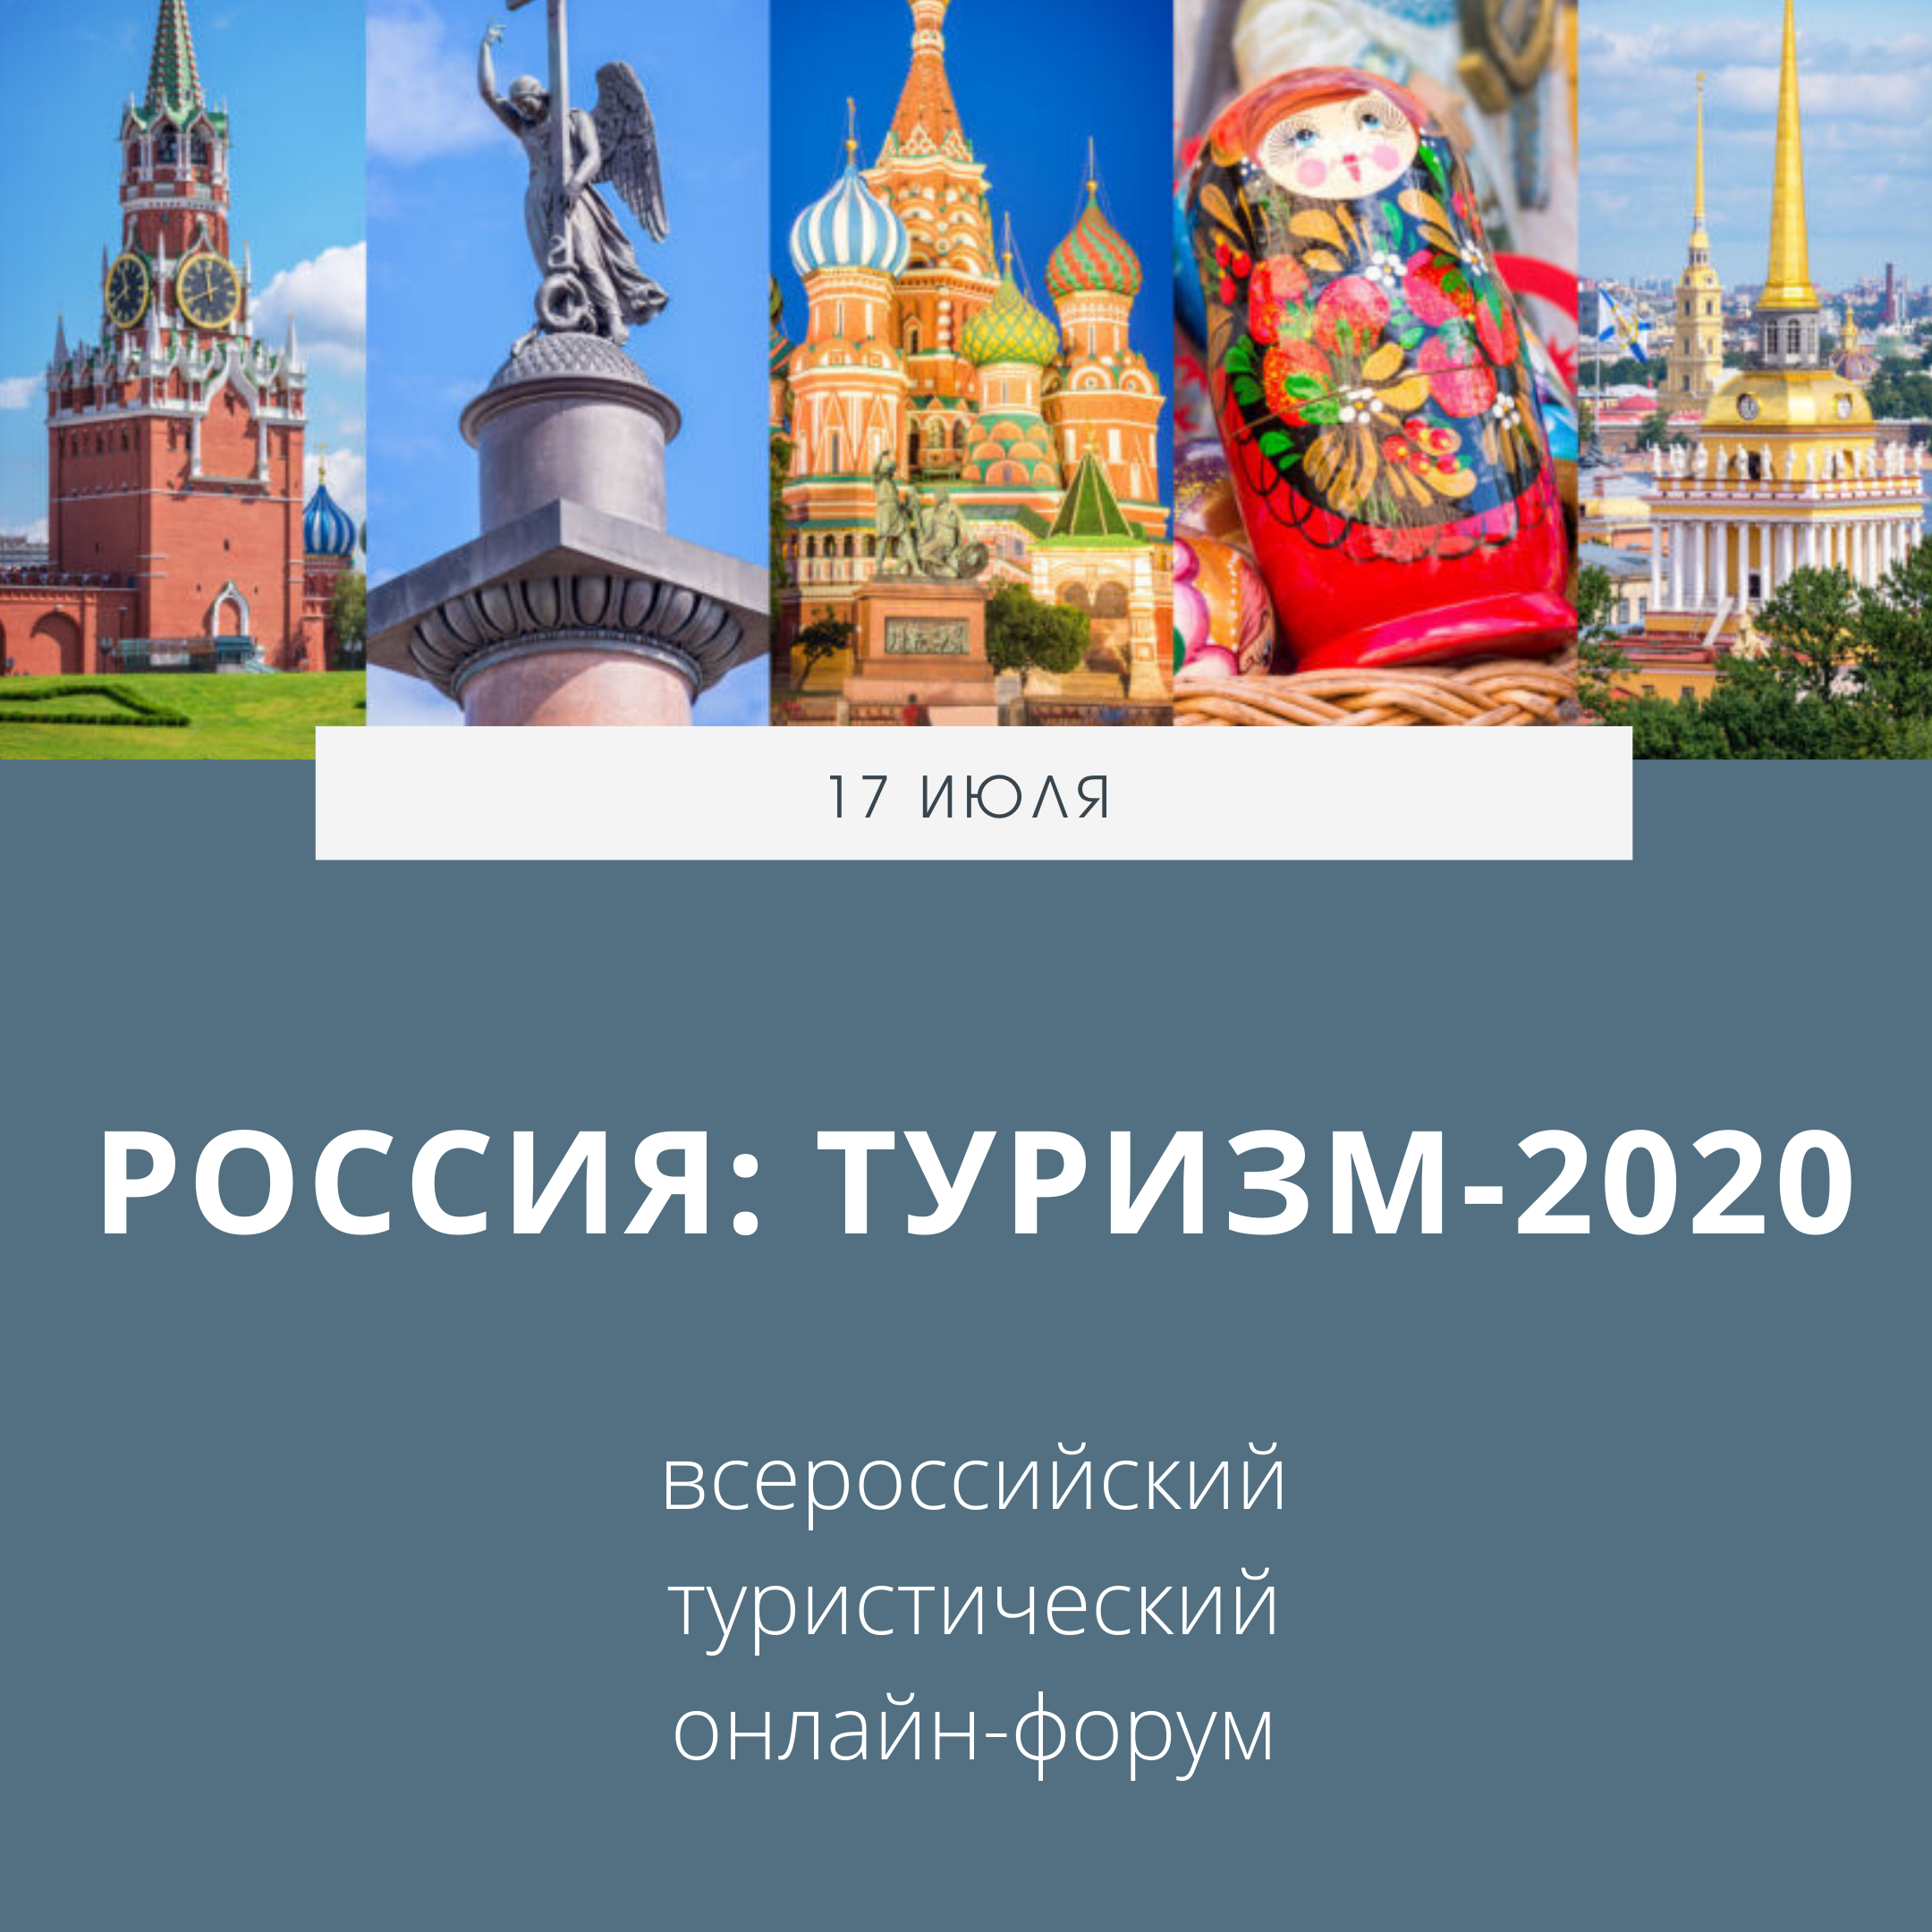 Туризм в России. Россия туризм 2020. Внутренний туризм в России. Развитие туризма. Внутренний туризм в рф